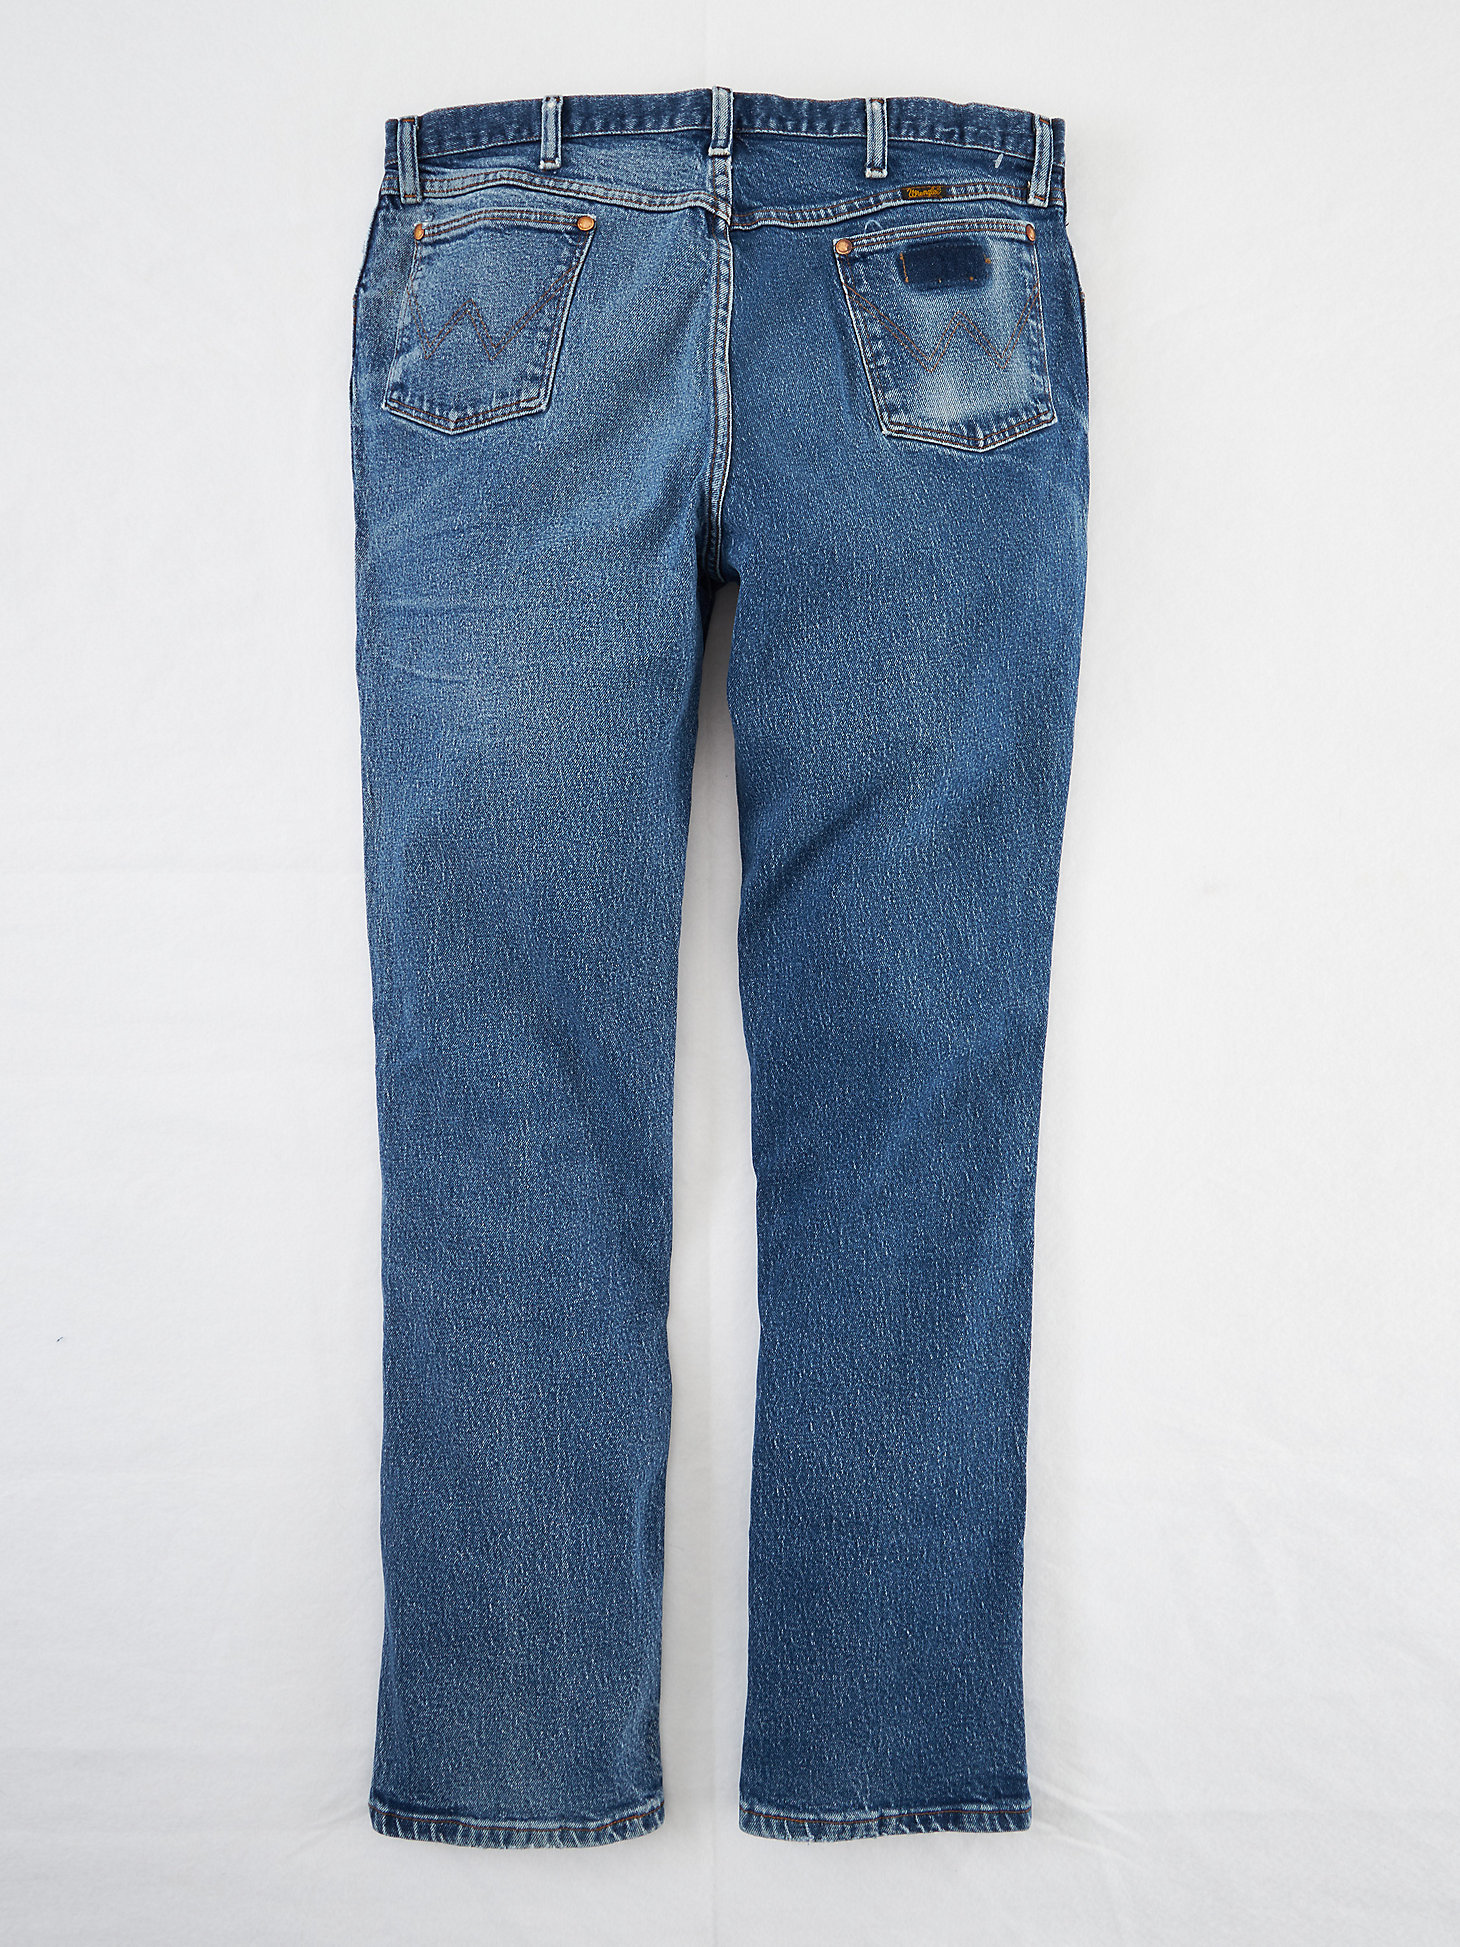 Wrangler Reborn™ Vintage 947 Jean (sz 36W 33L) in Denim alternative view 3